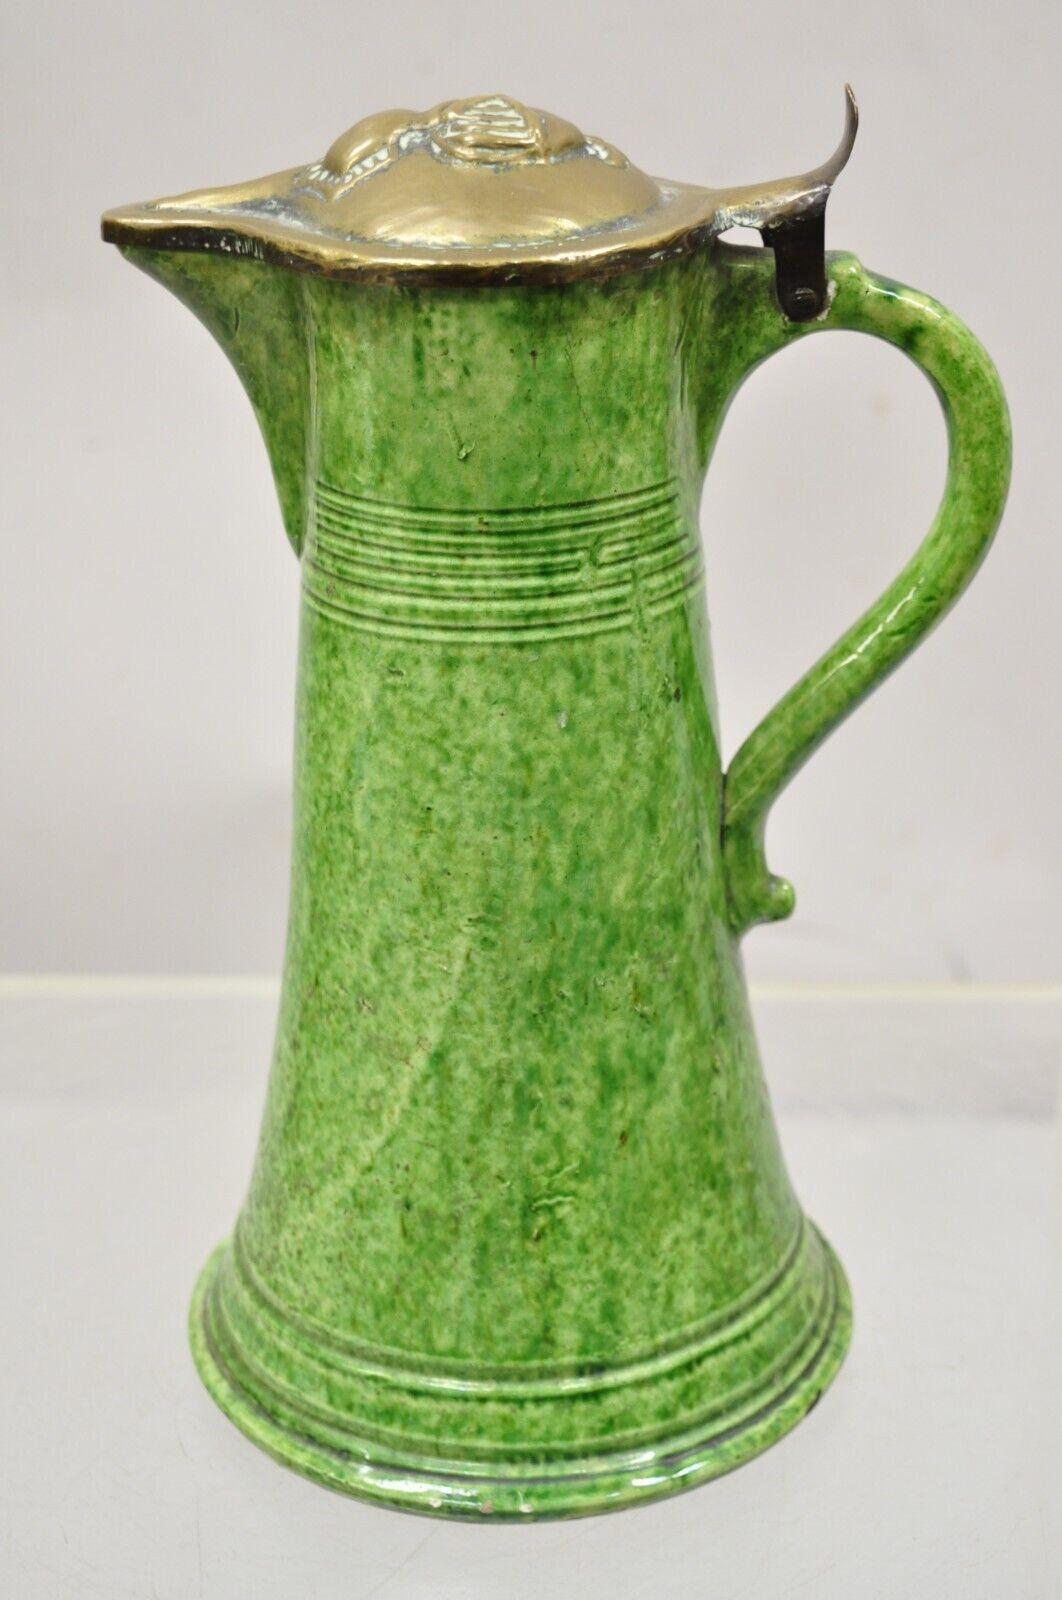 Pichet de la Renaissance gothique en céramique verte avec couvercle en laiton en forme d'armure de soldat. Circa 19ème siècle. Dimensions : 12